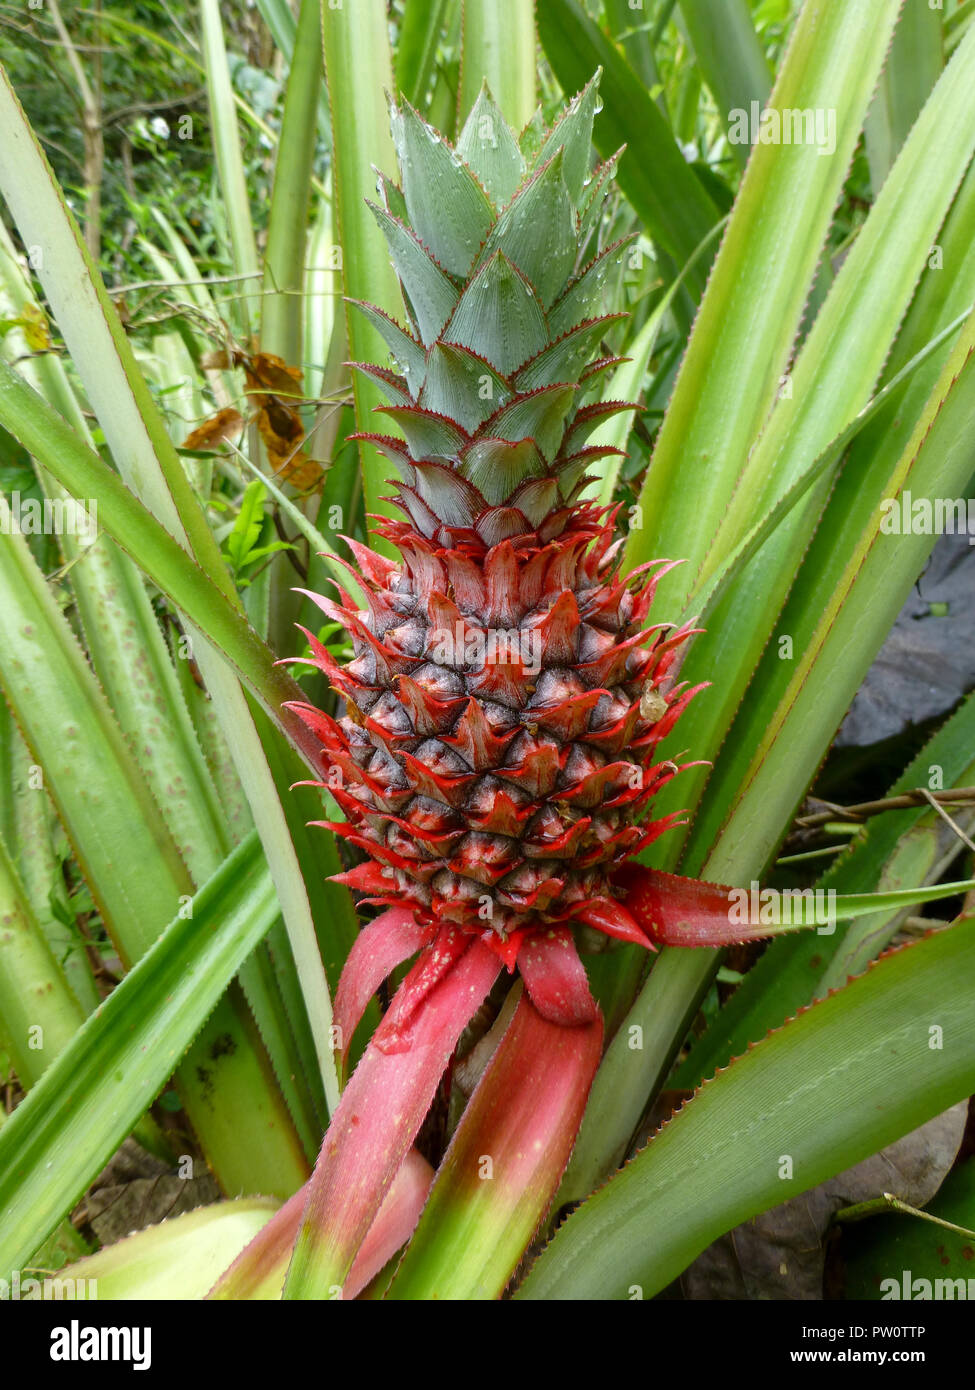 Ananaspflanze mit einem roten Früchten in Asien im Sommer Stockfoto